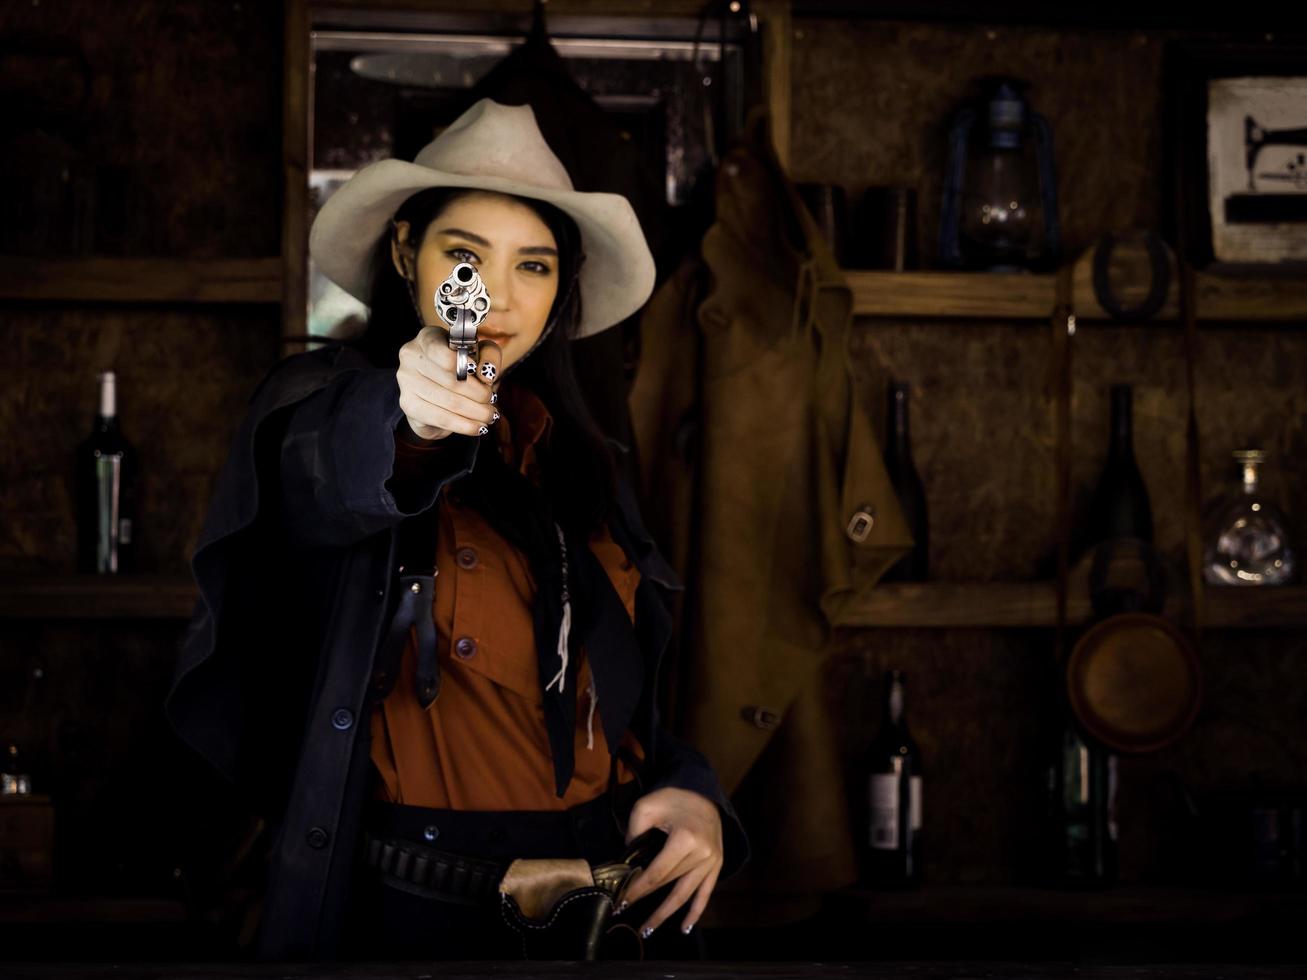 una cowgirl occidentale si prepara a usare una pistola per difendersi in una terra dove le persone devono proteggersi foto